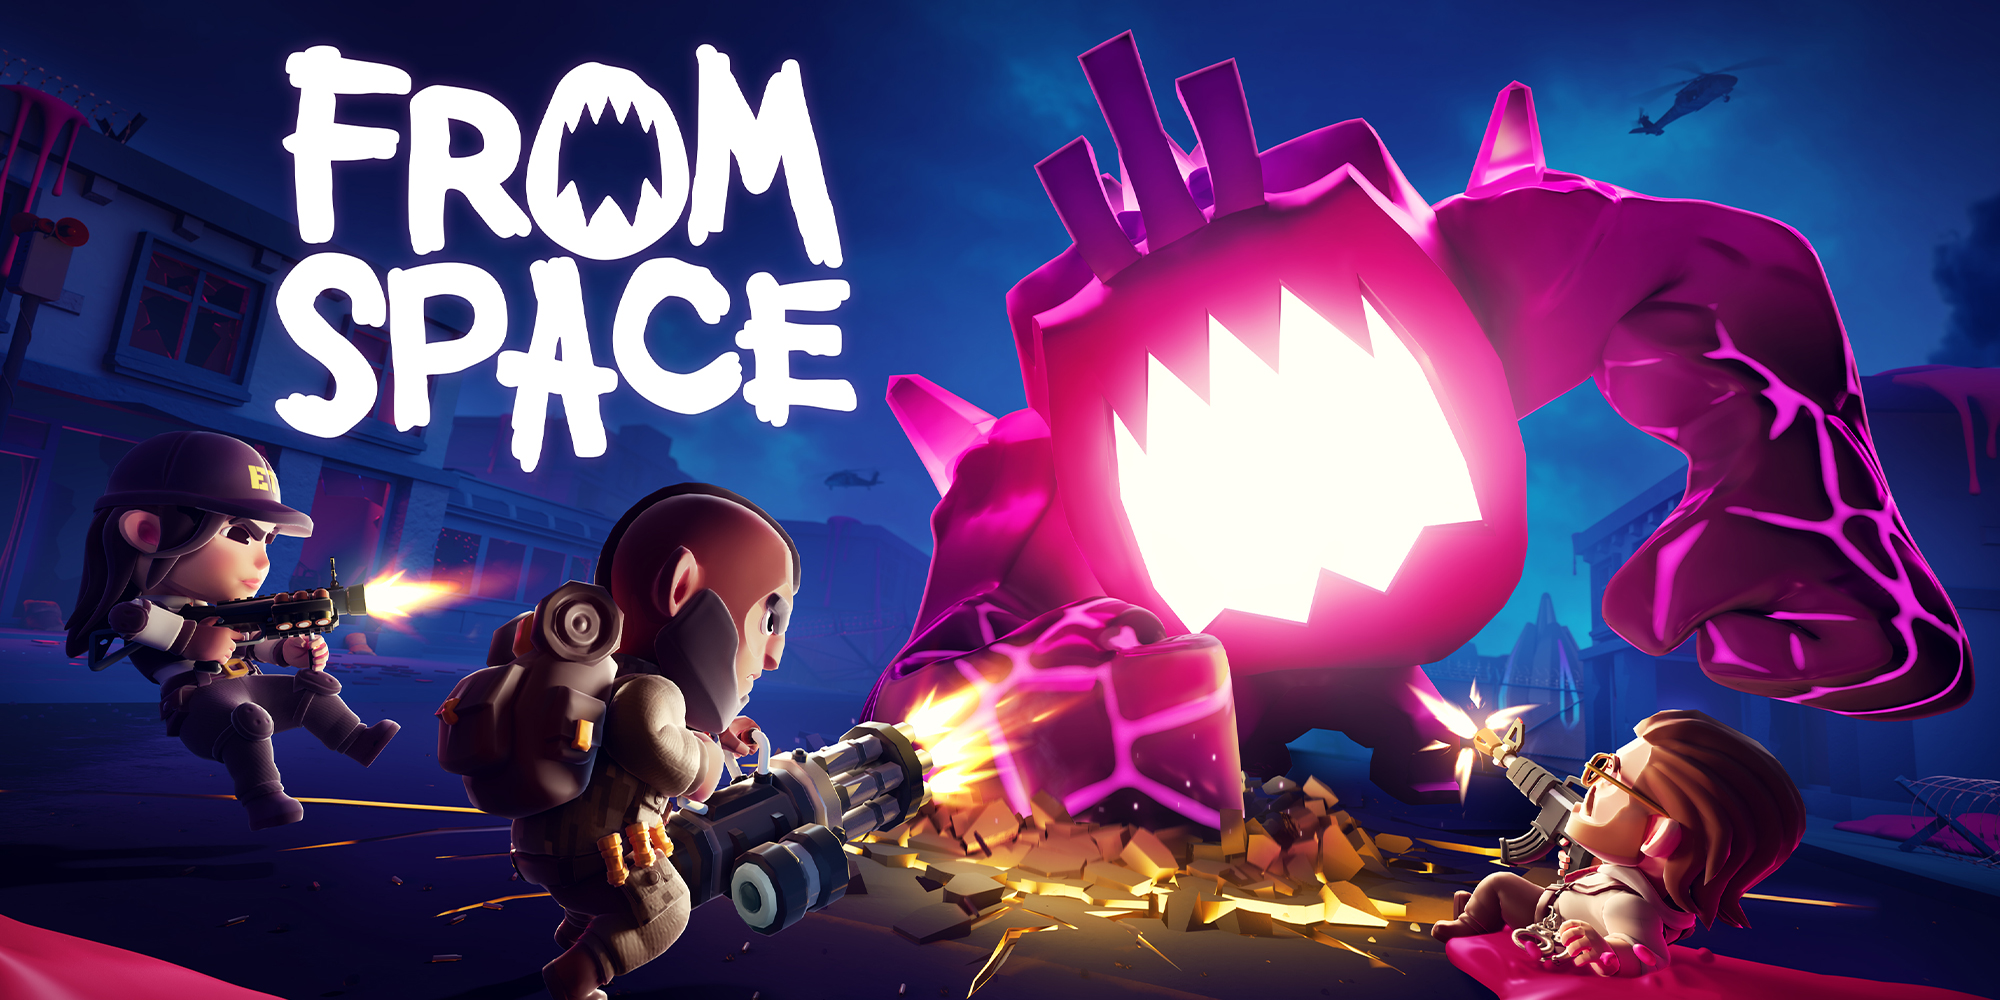 Space Blast Zom A Matching Game, Aplicações de download da Nintendo Switch, Jogos